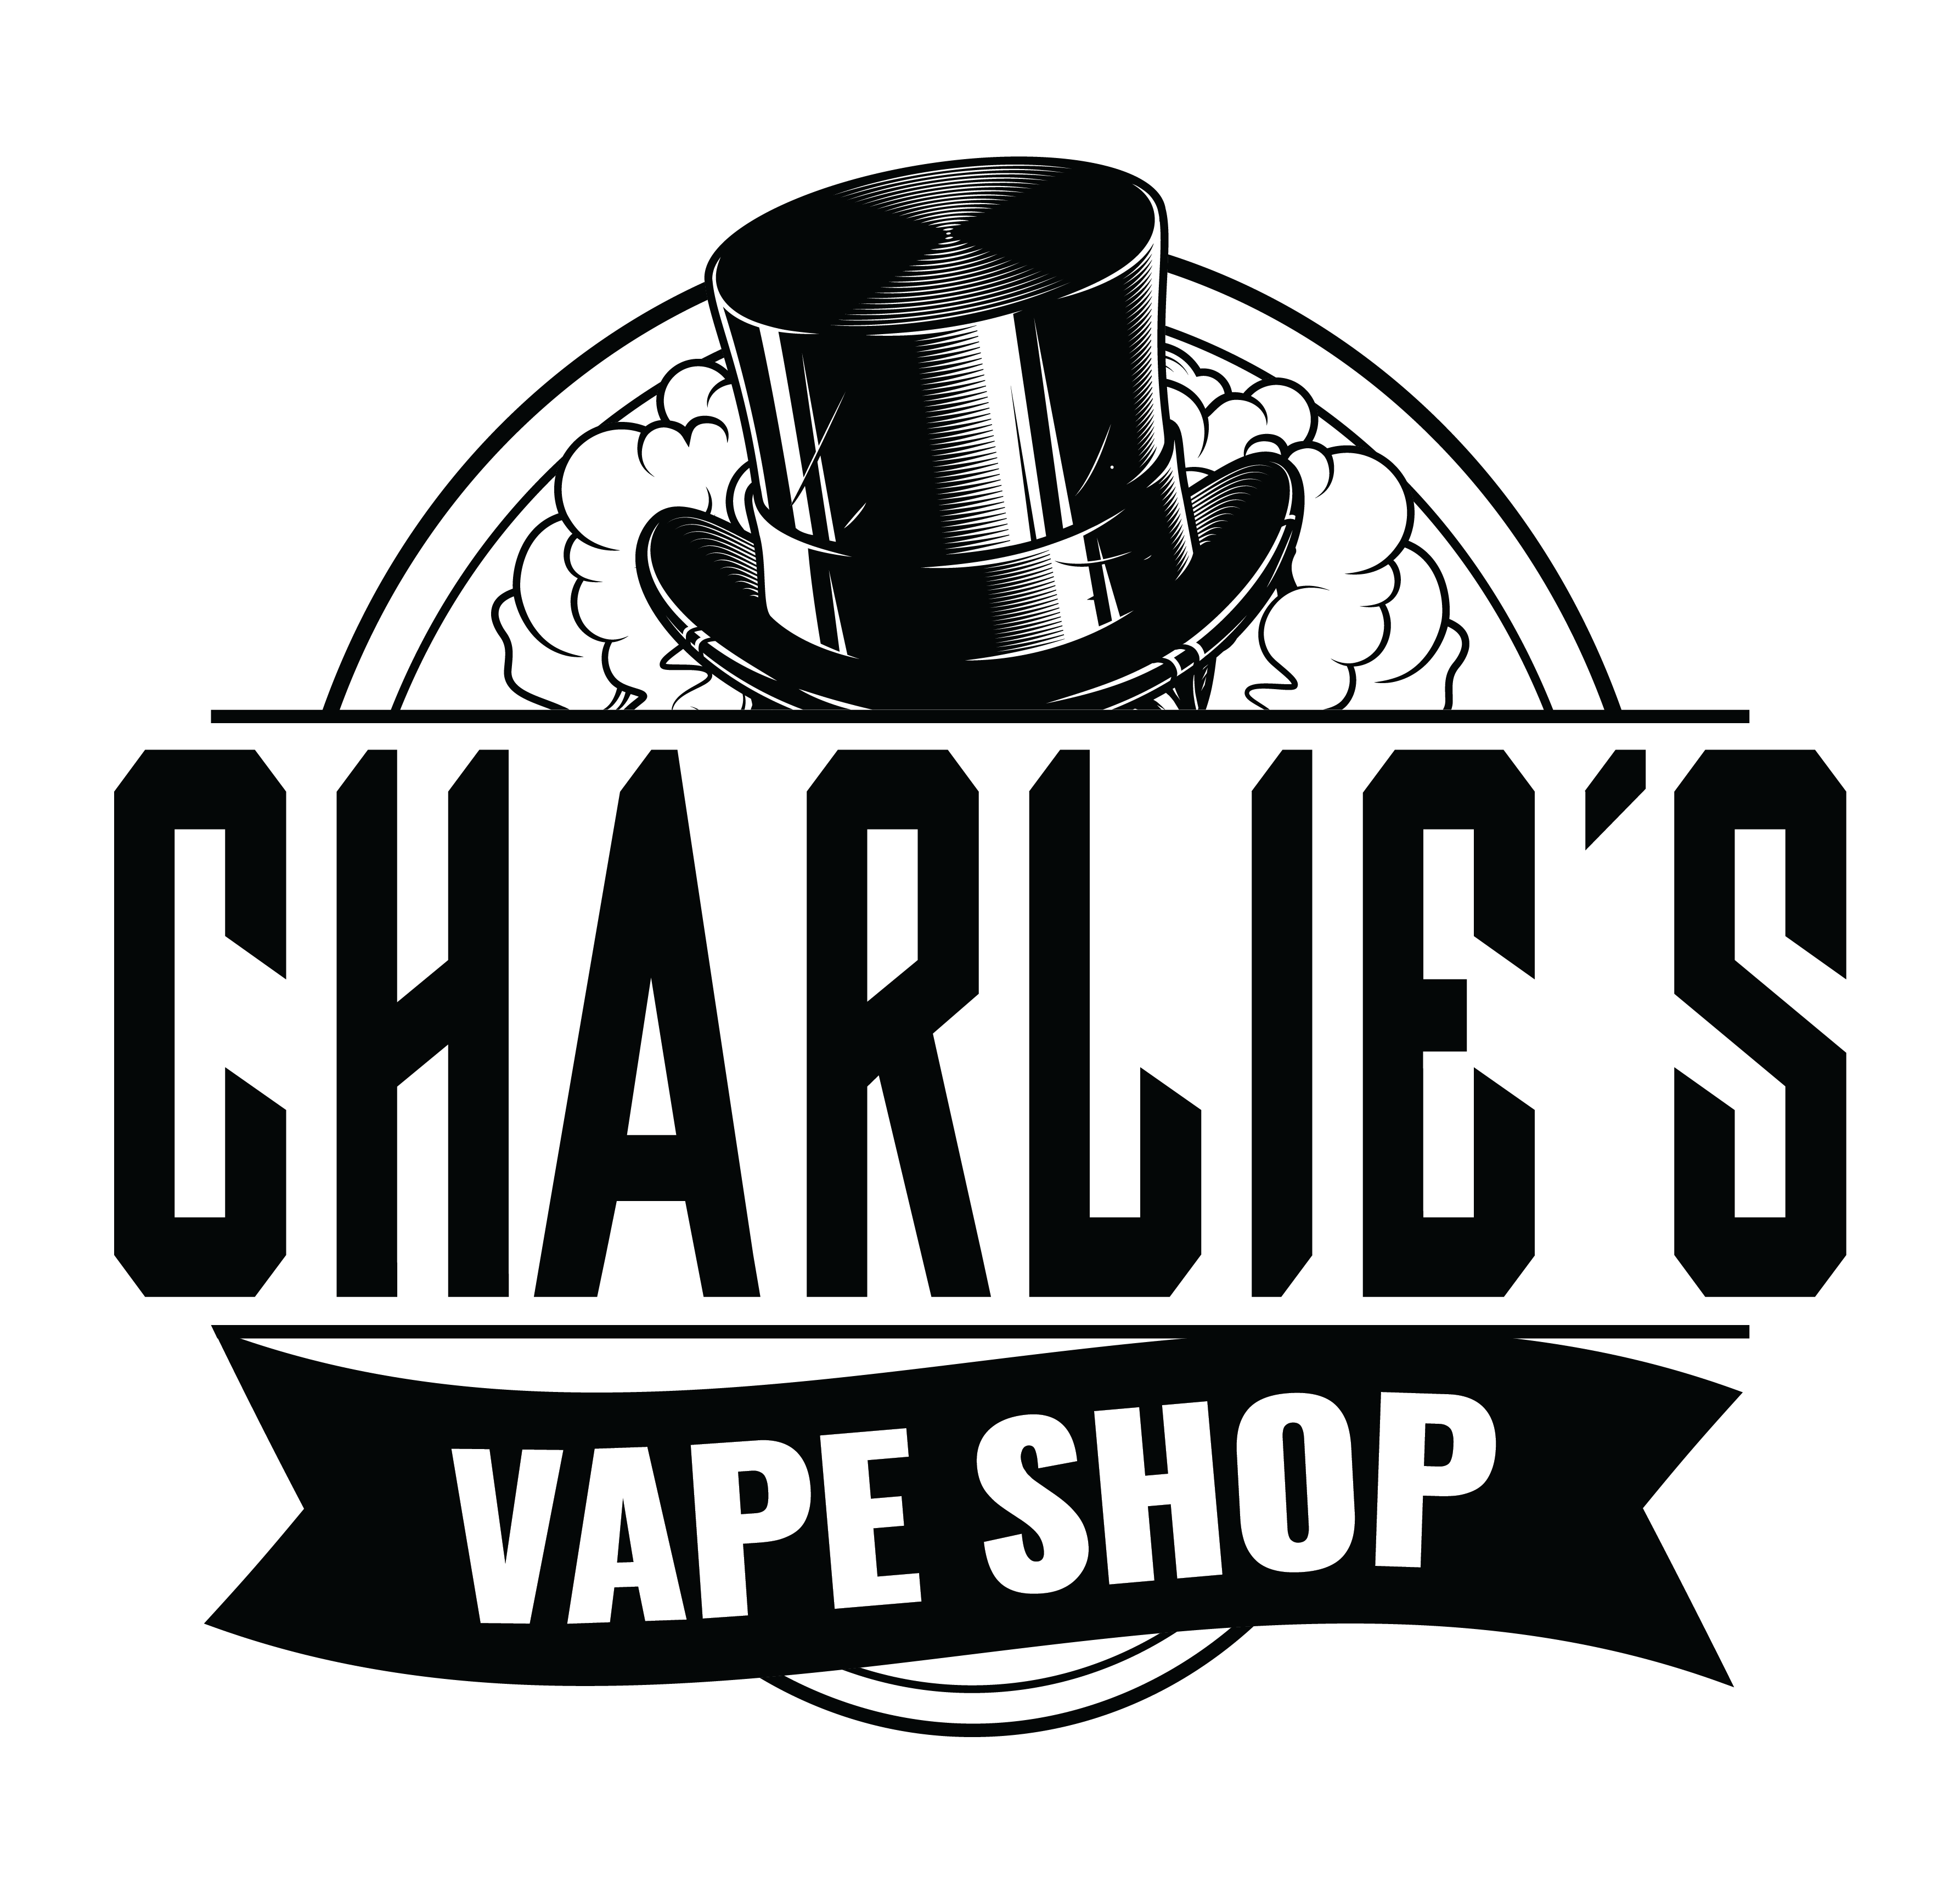 Charlie's Vape